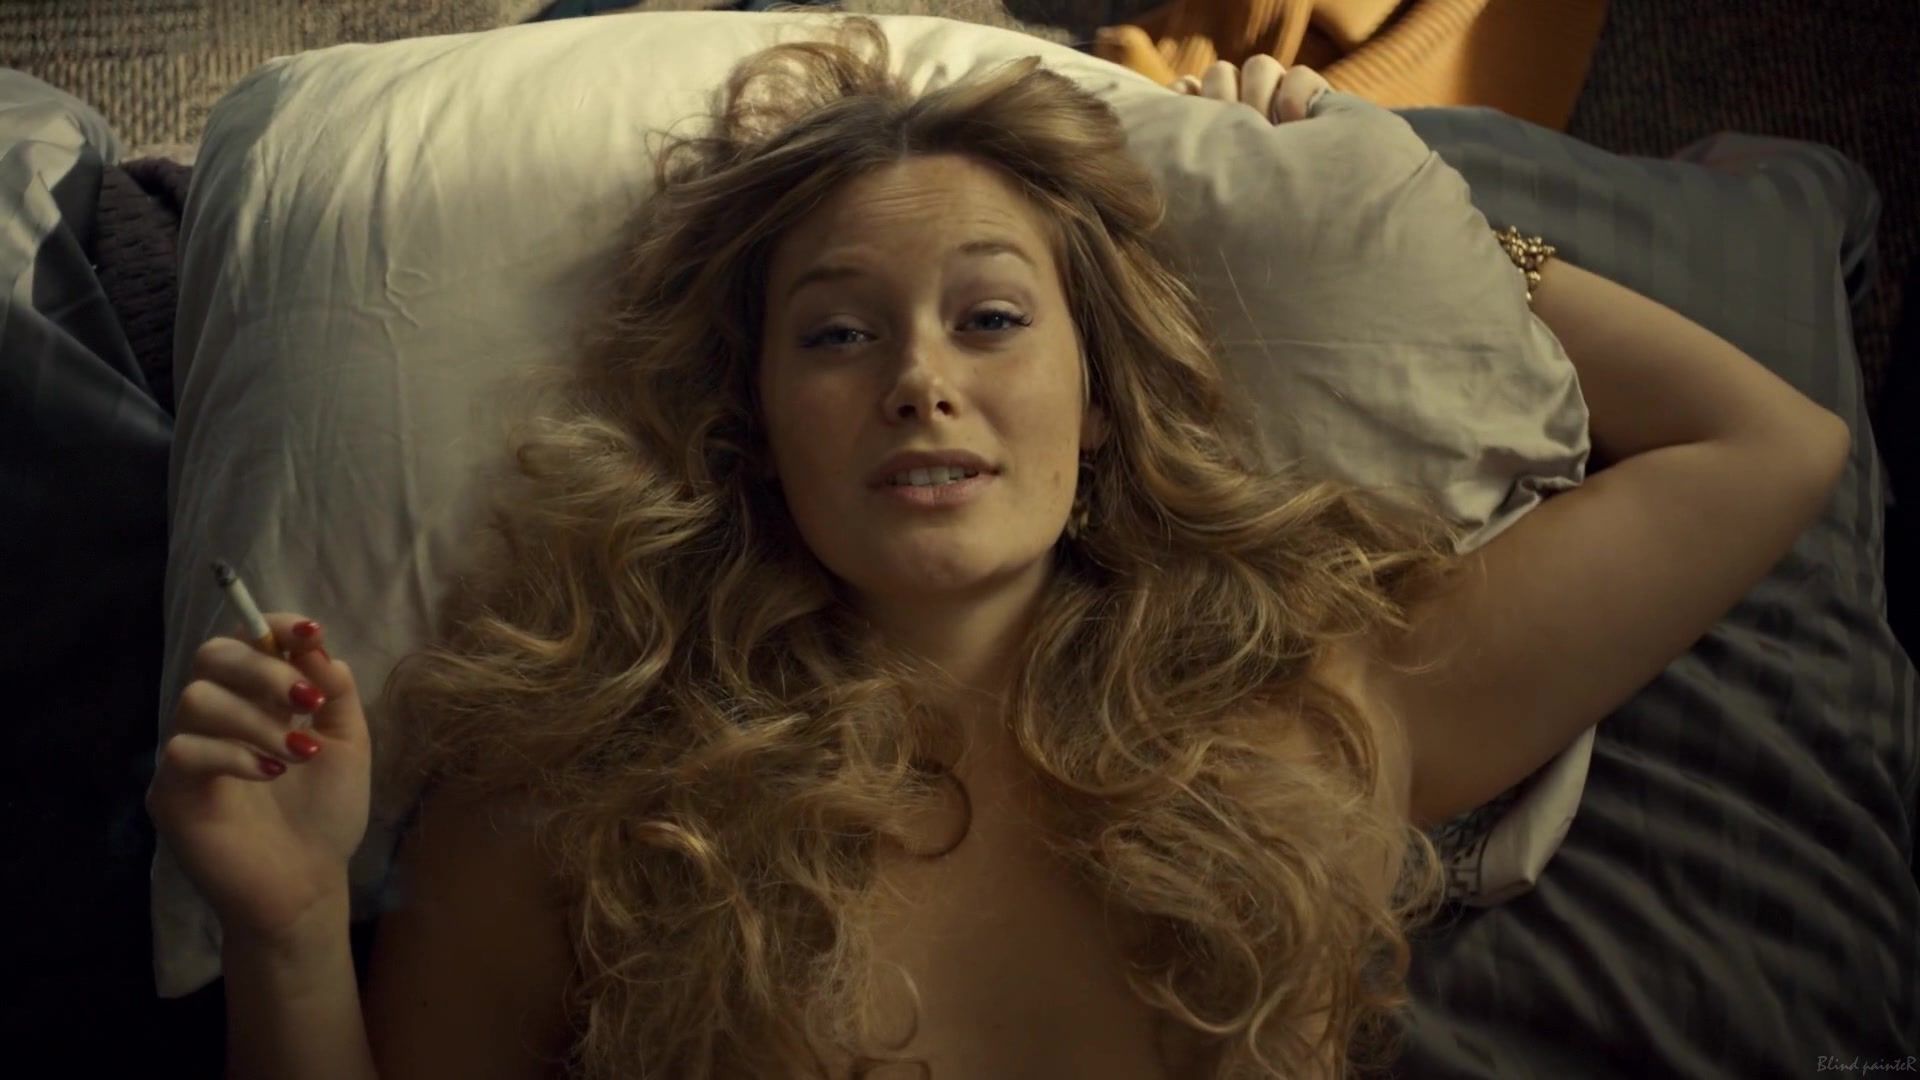 Gay Reality Rachel Keller naked - Fargo S02E04 (2015) Hot Naked Women